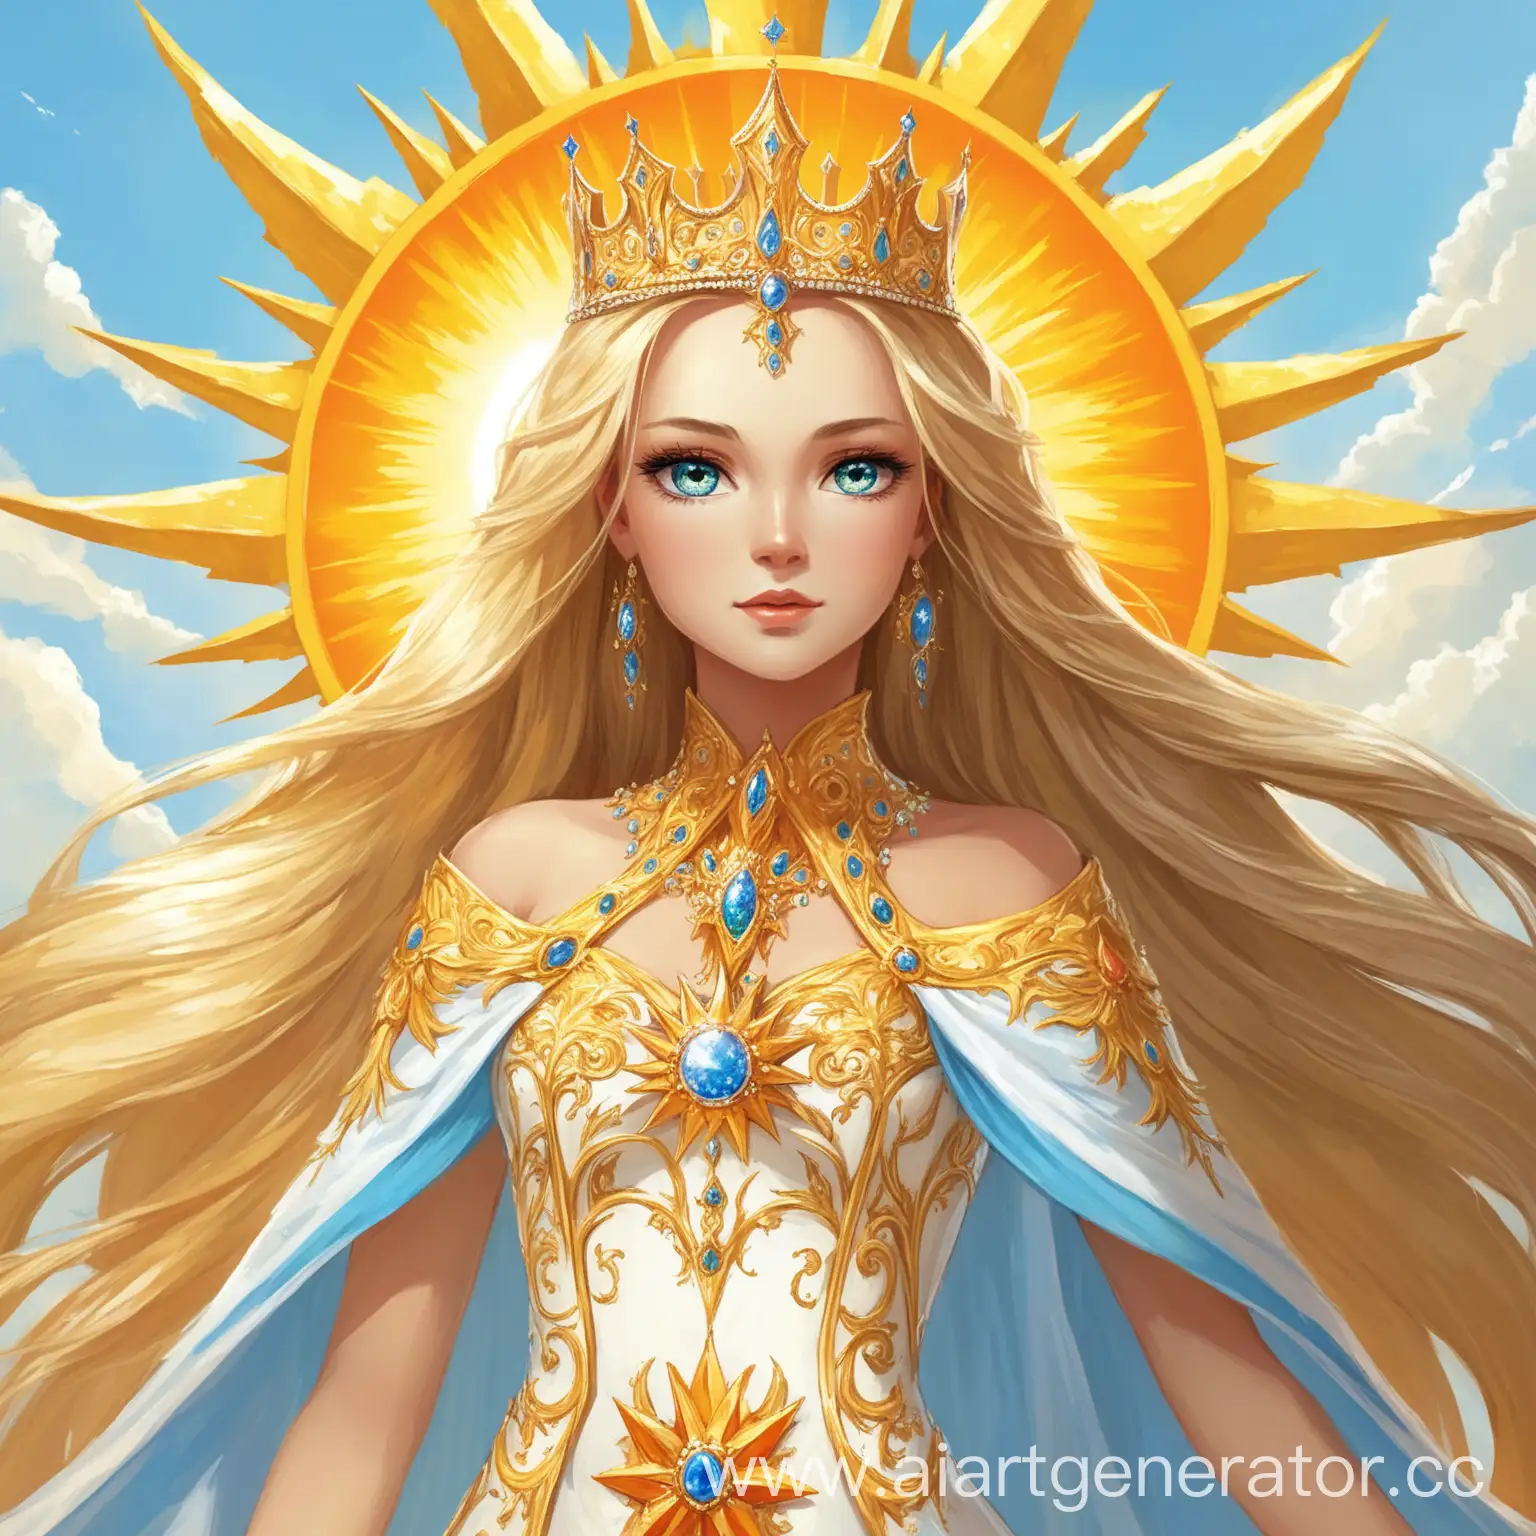 В далеком царстве, не так далеком государстве, жила-была красавица царевна Устинья. Не простая она была царевна, а со светлыми волосами, как солнце, и глазами цвета летнего неба.